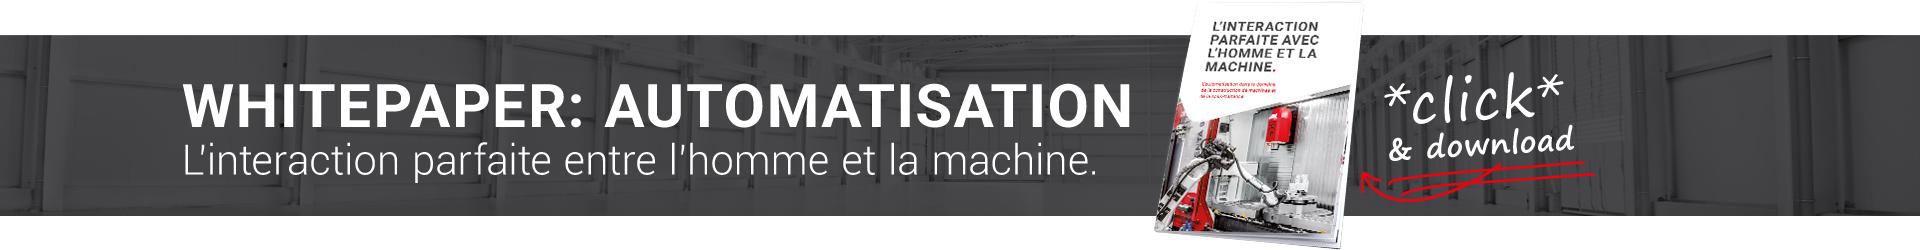 fr Whitepaper-Automation_Website-teaser